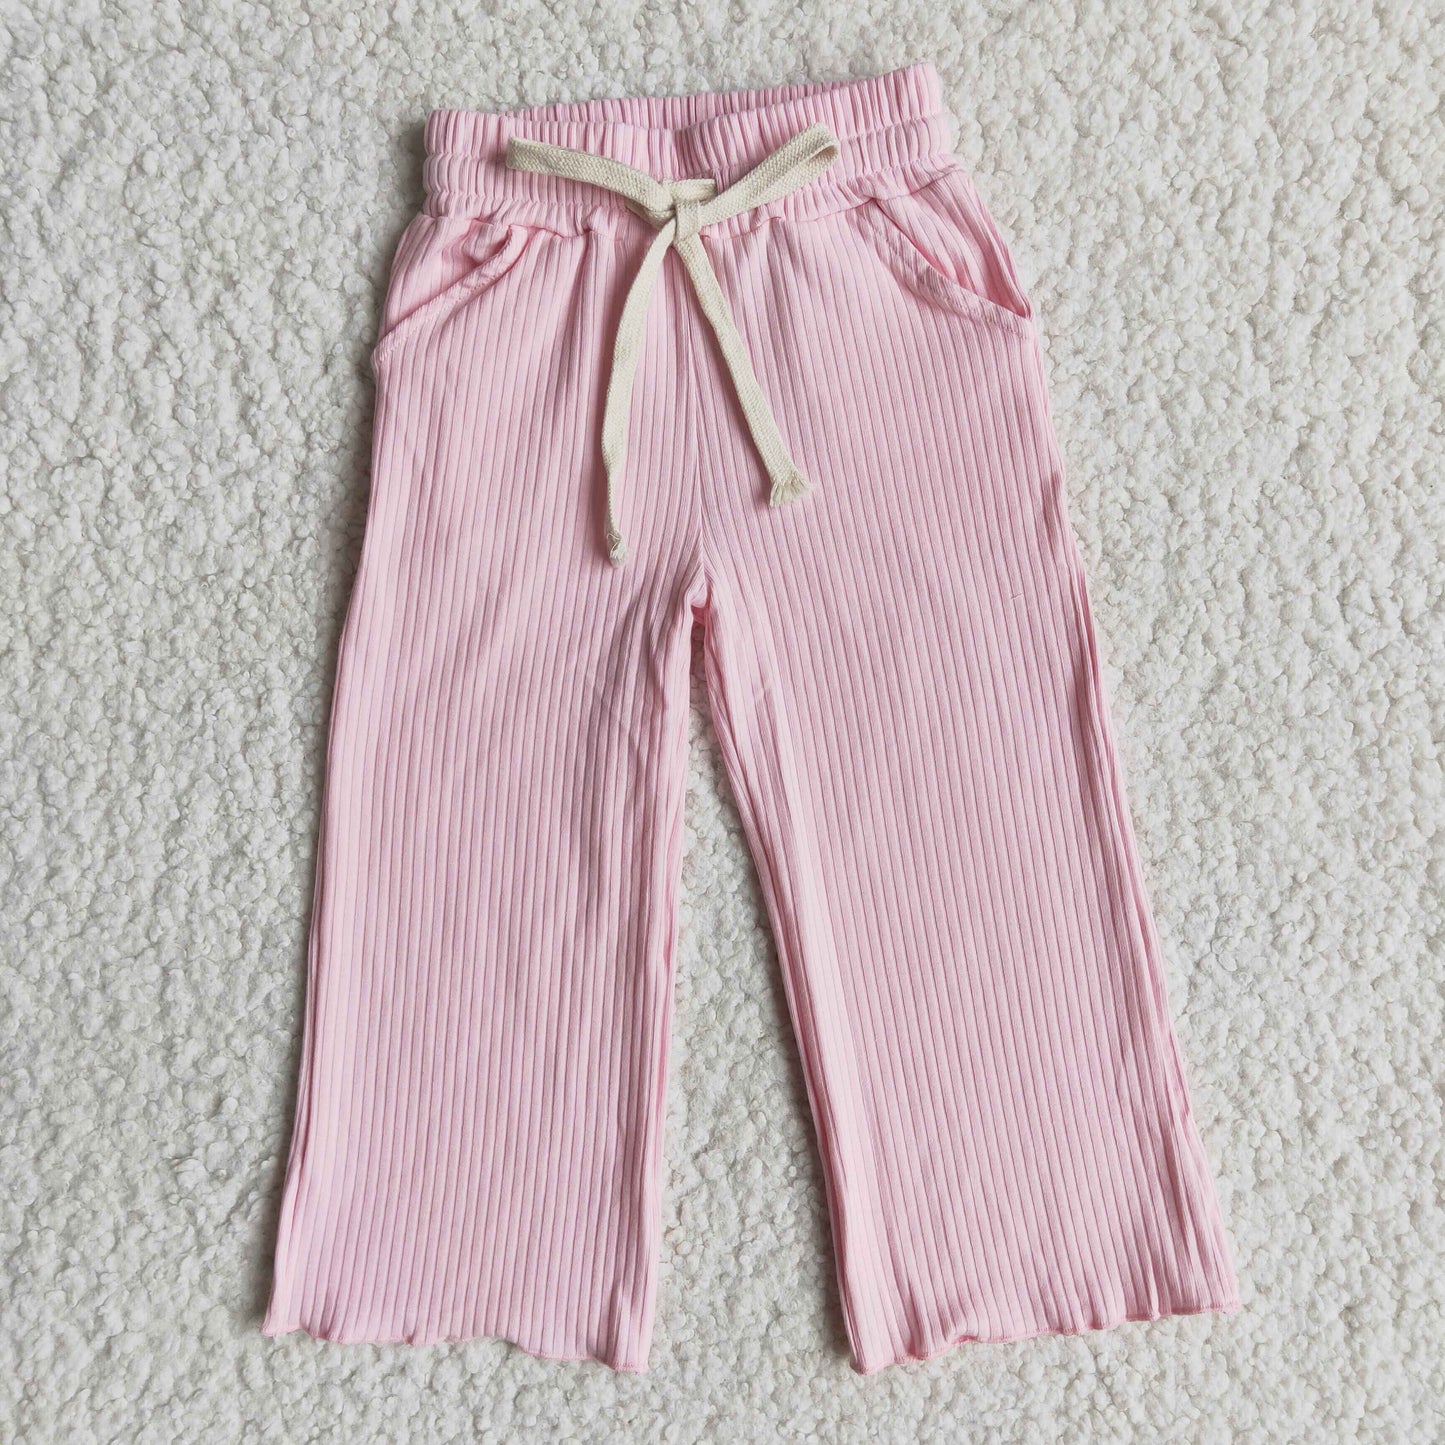 Baby girls pink long cotton pants